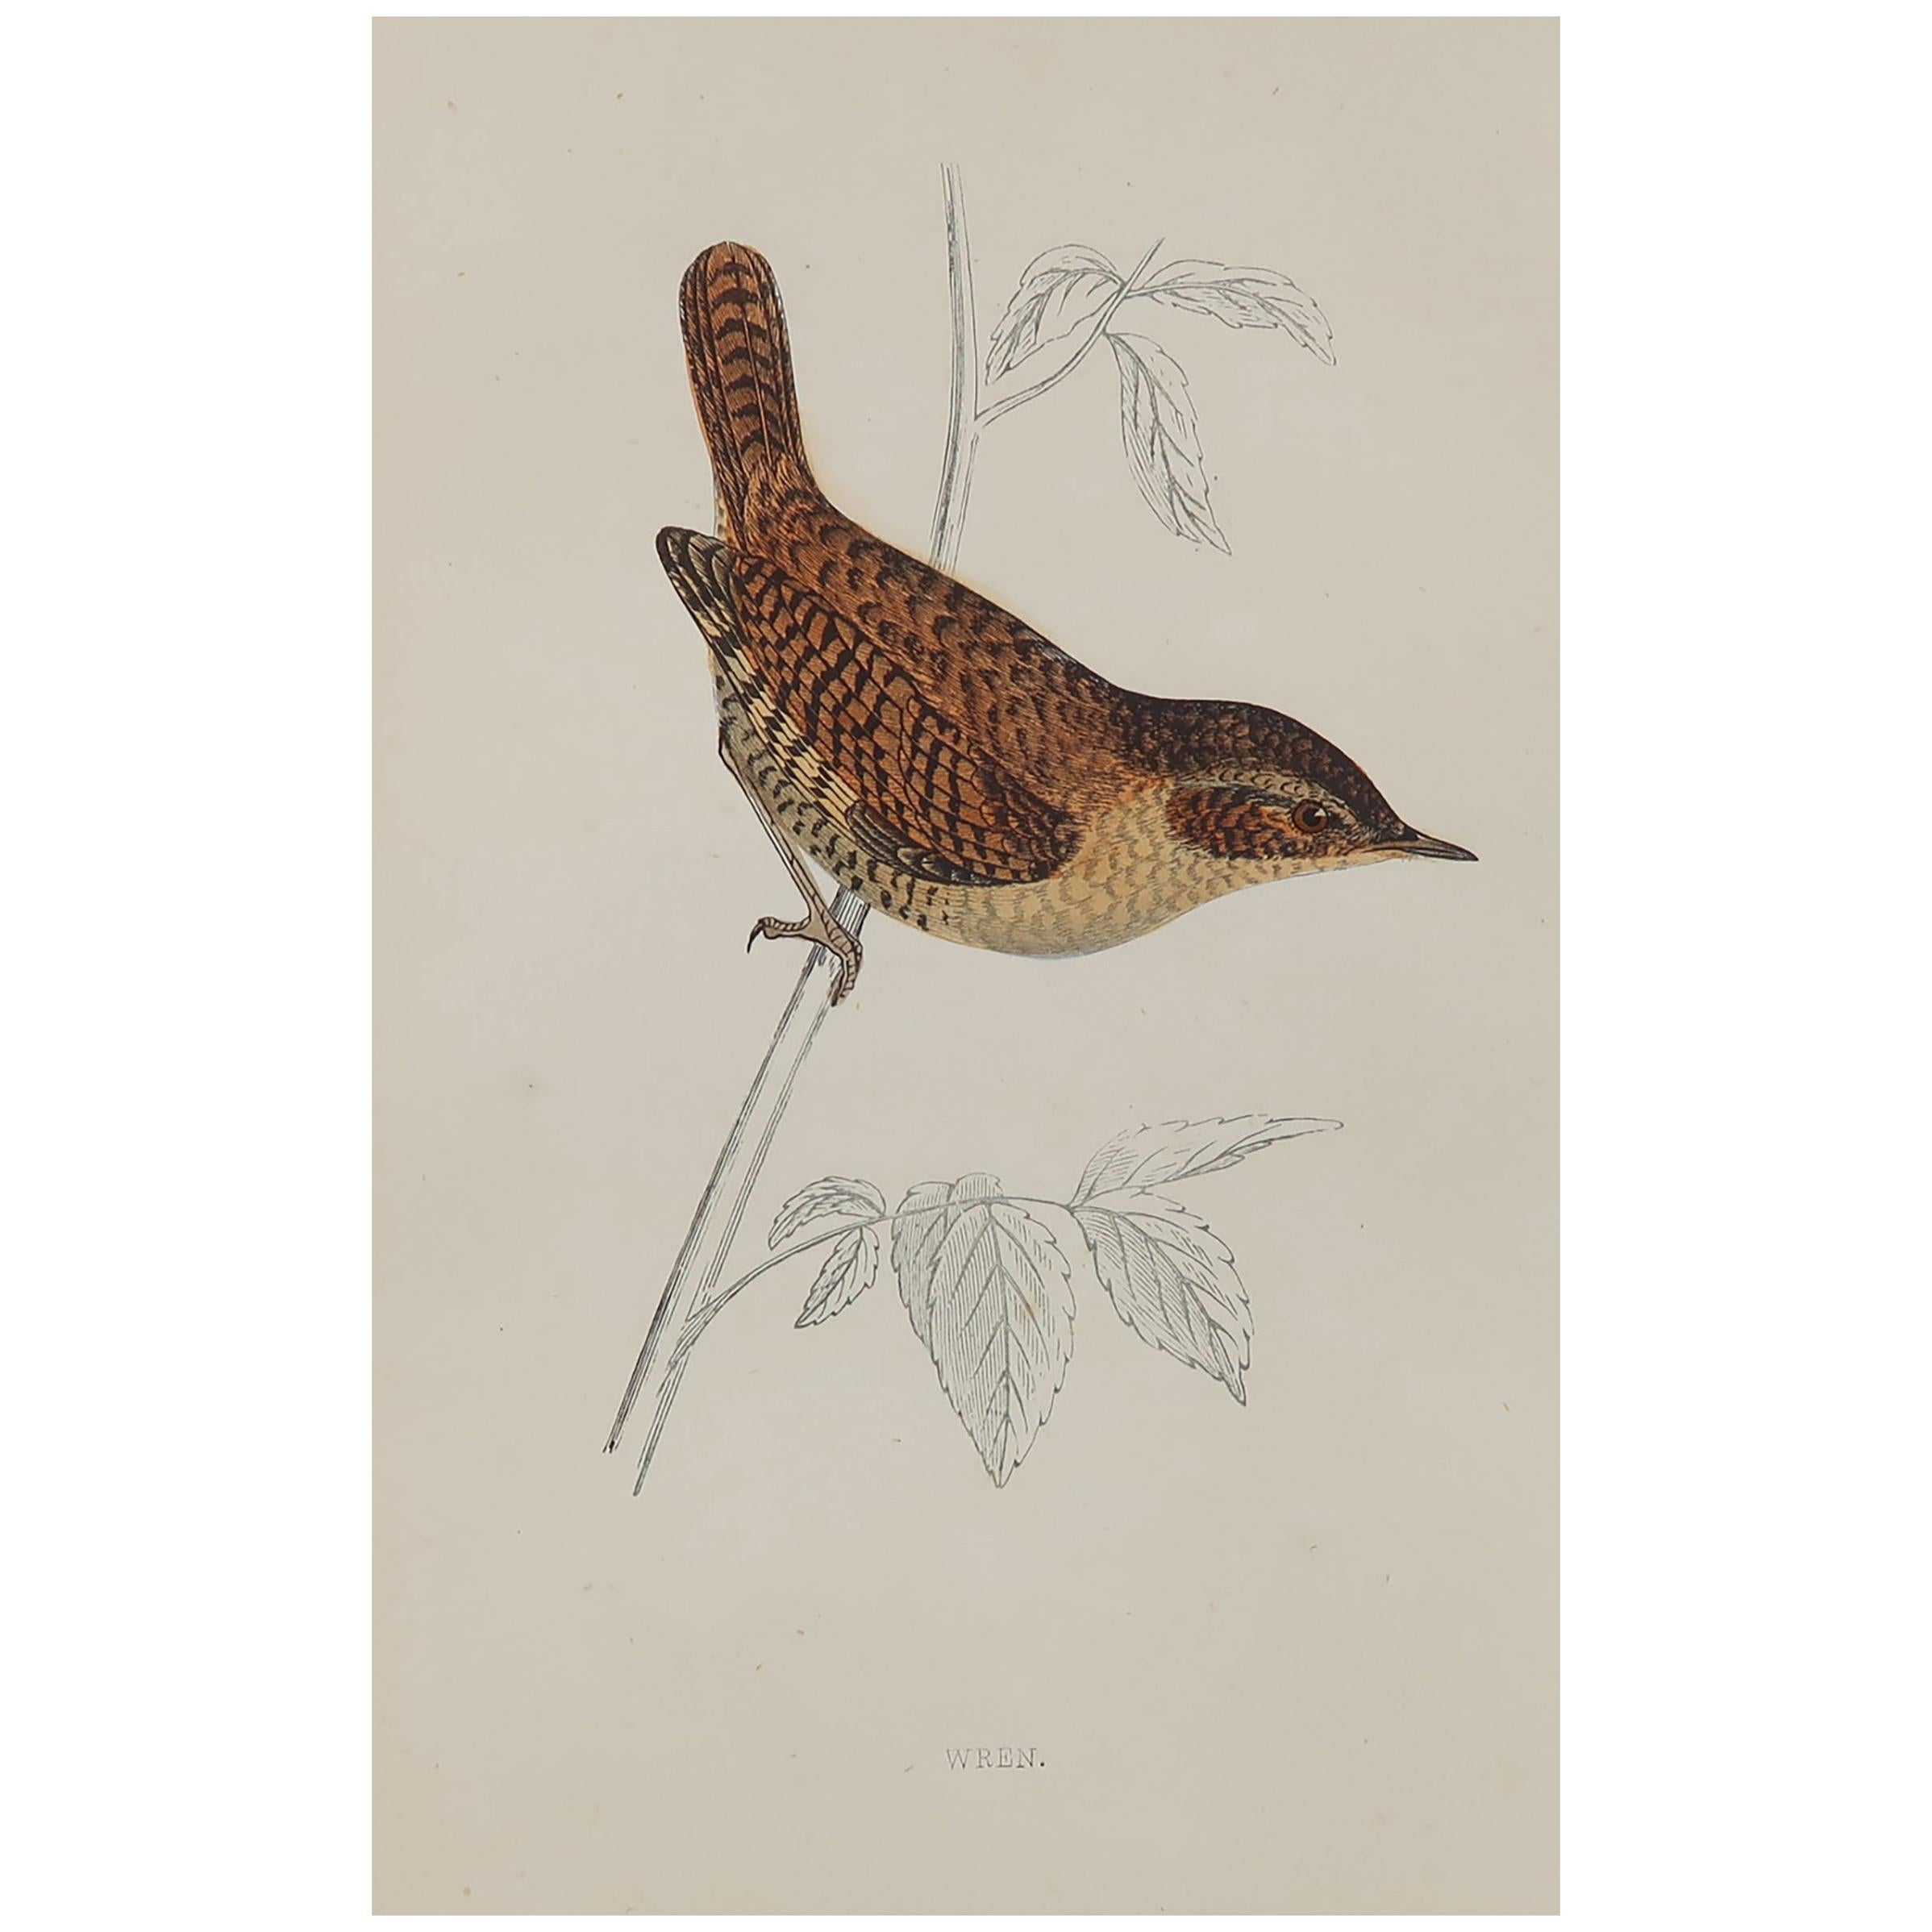 Original Antique Bird Print, the Wren, circa 1870